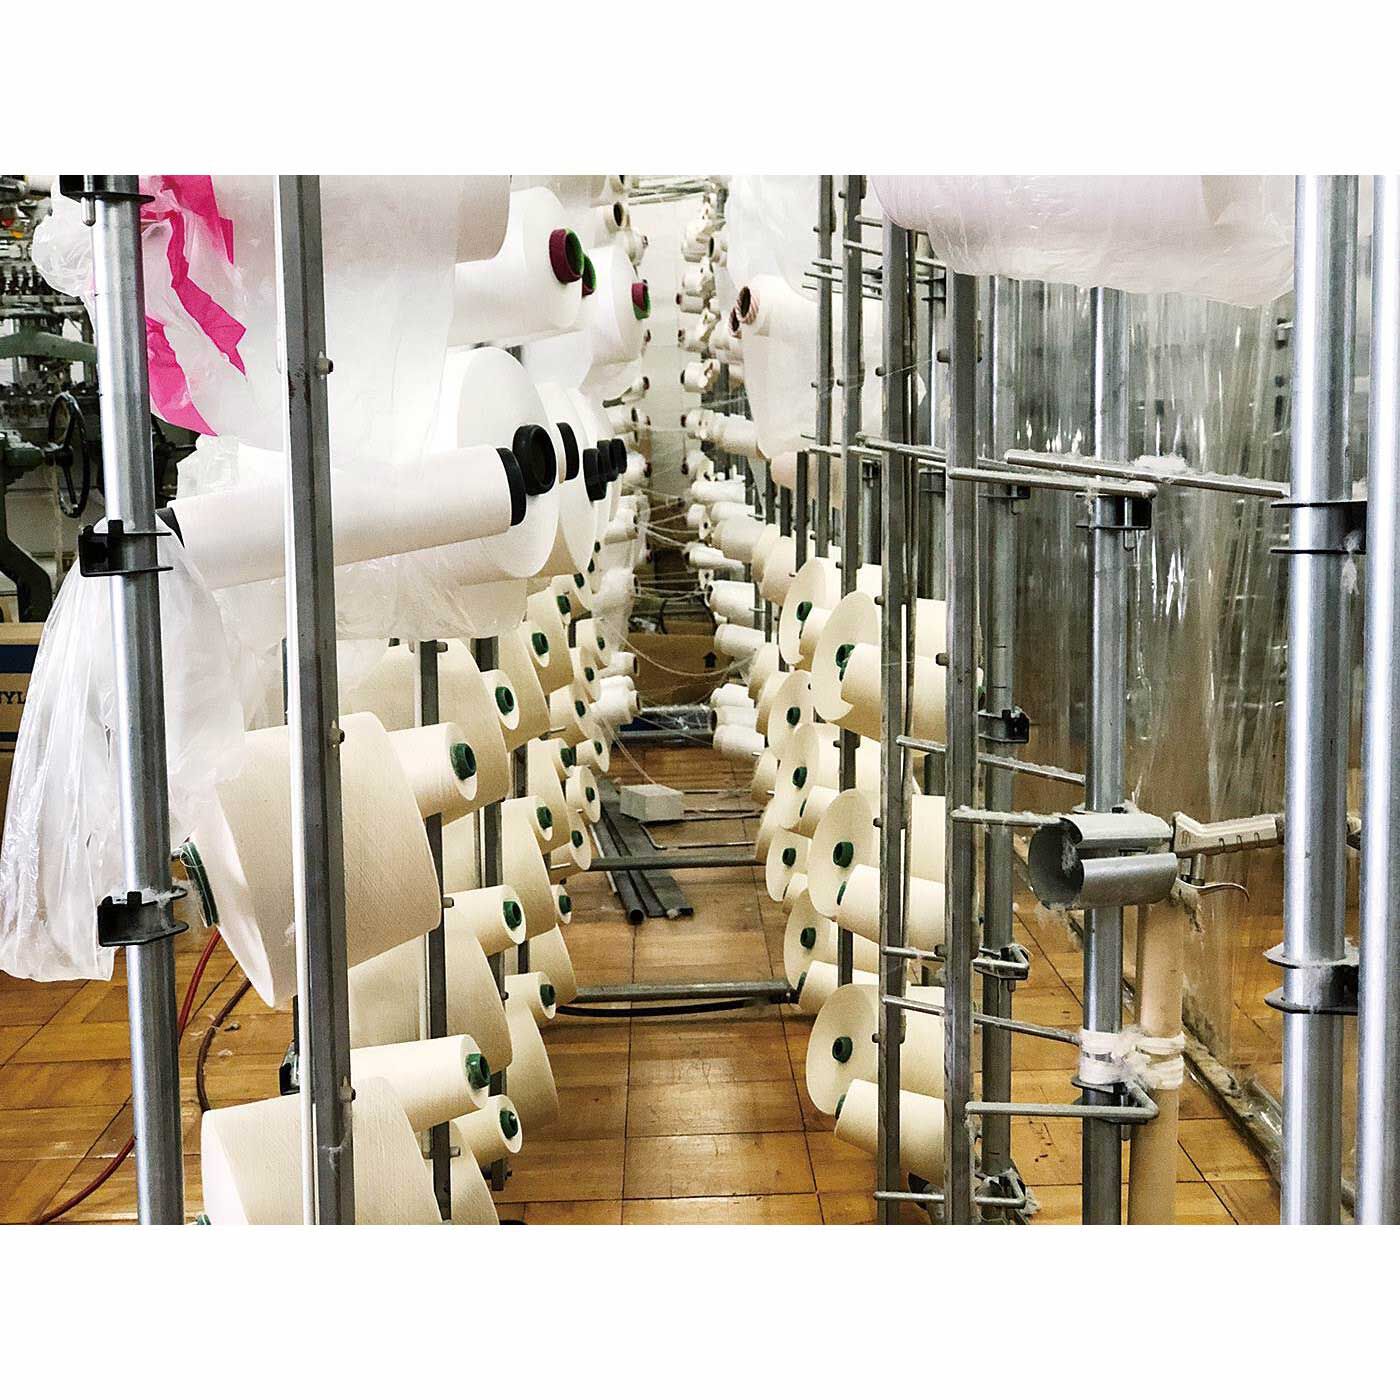 Real Stock|ボーイッシュカラーのパイルピローカバー〈ボーダー〉|ひとつのピローカバーに、なんと44本の糸が使われています。